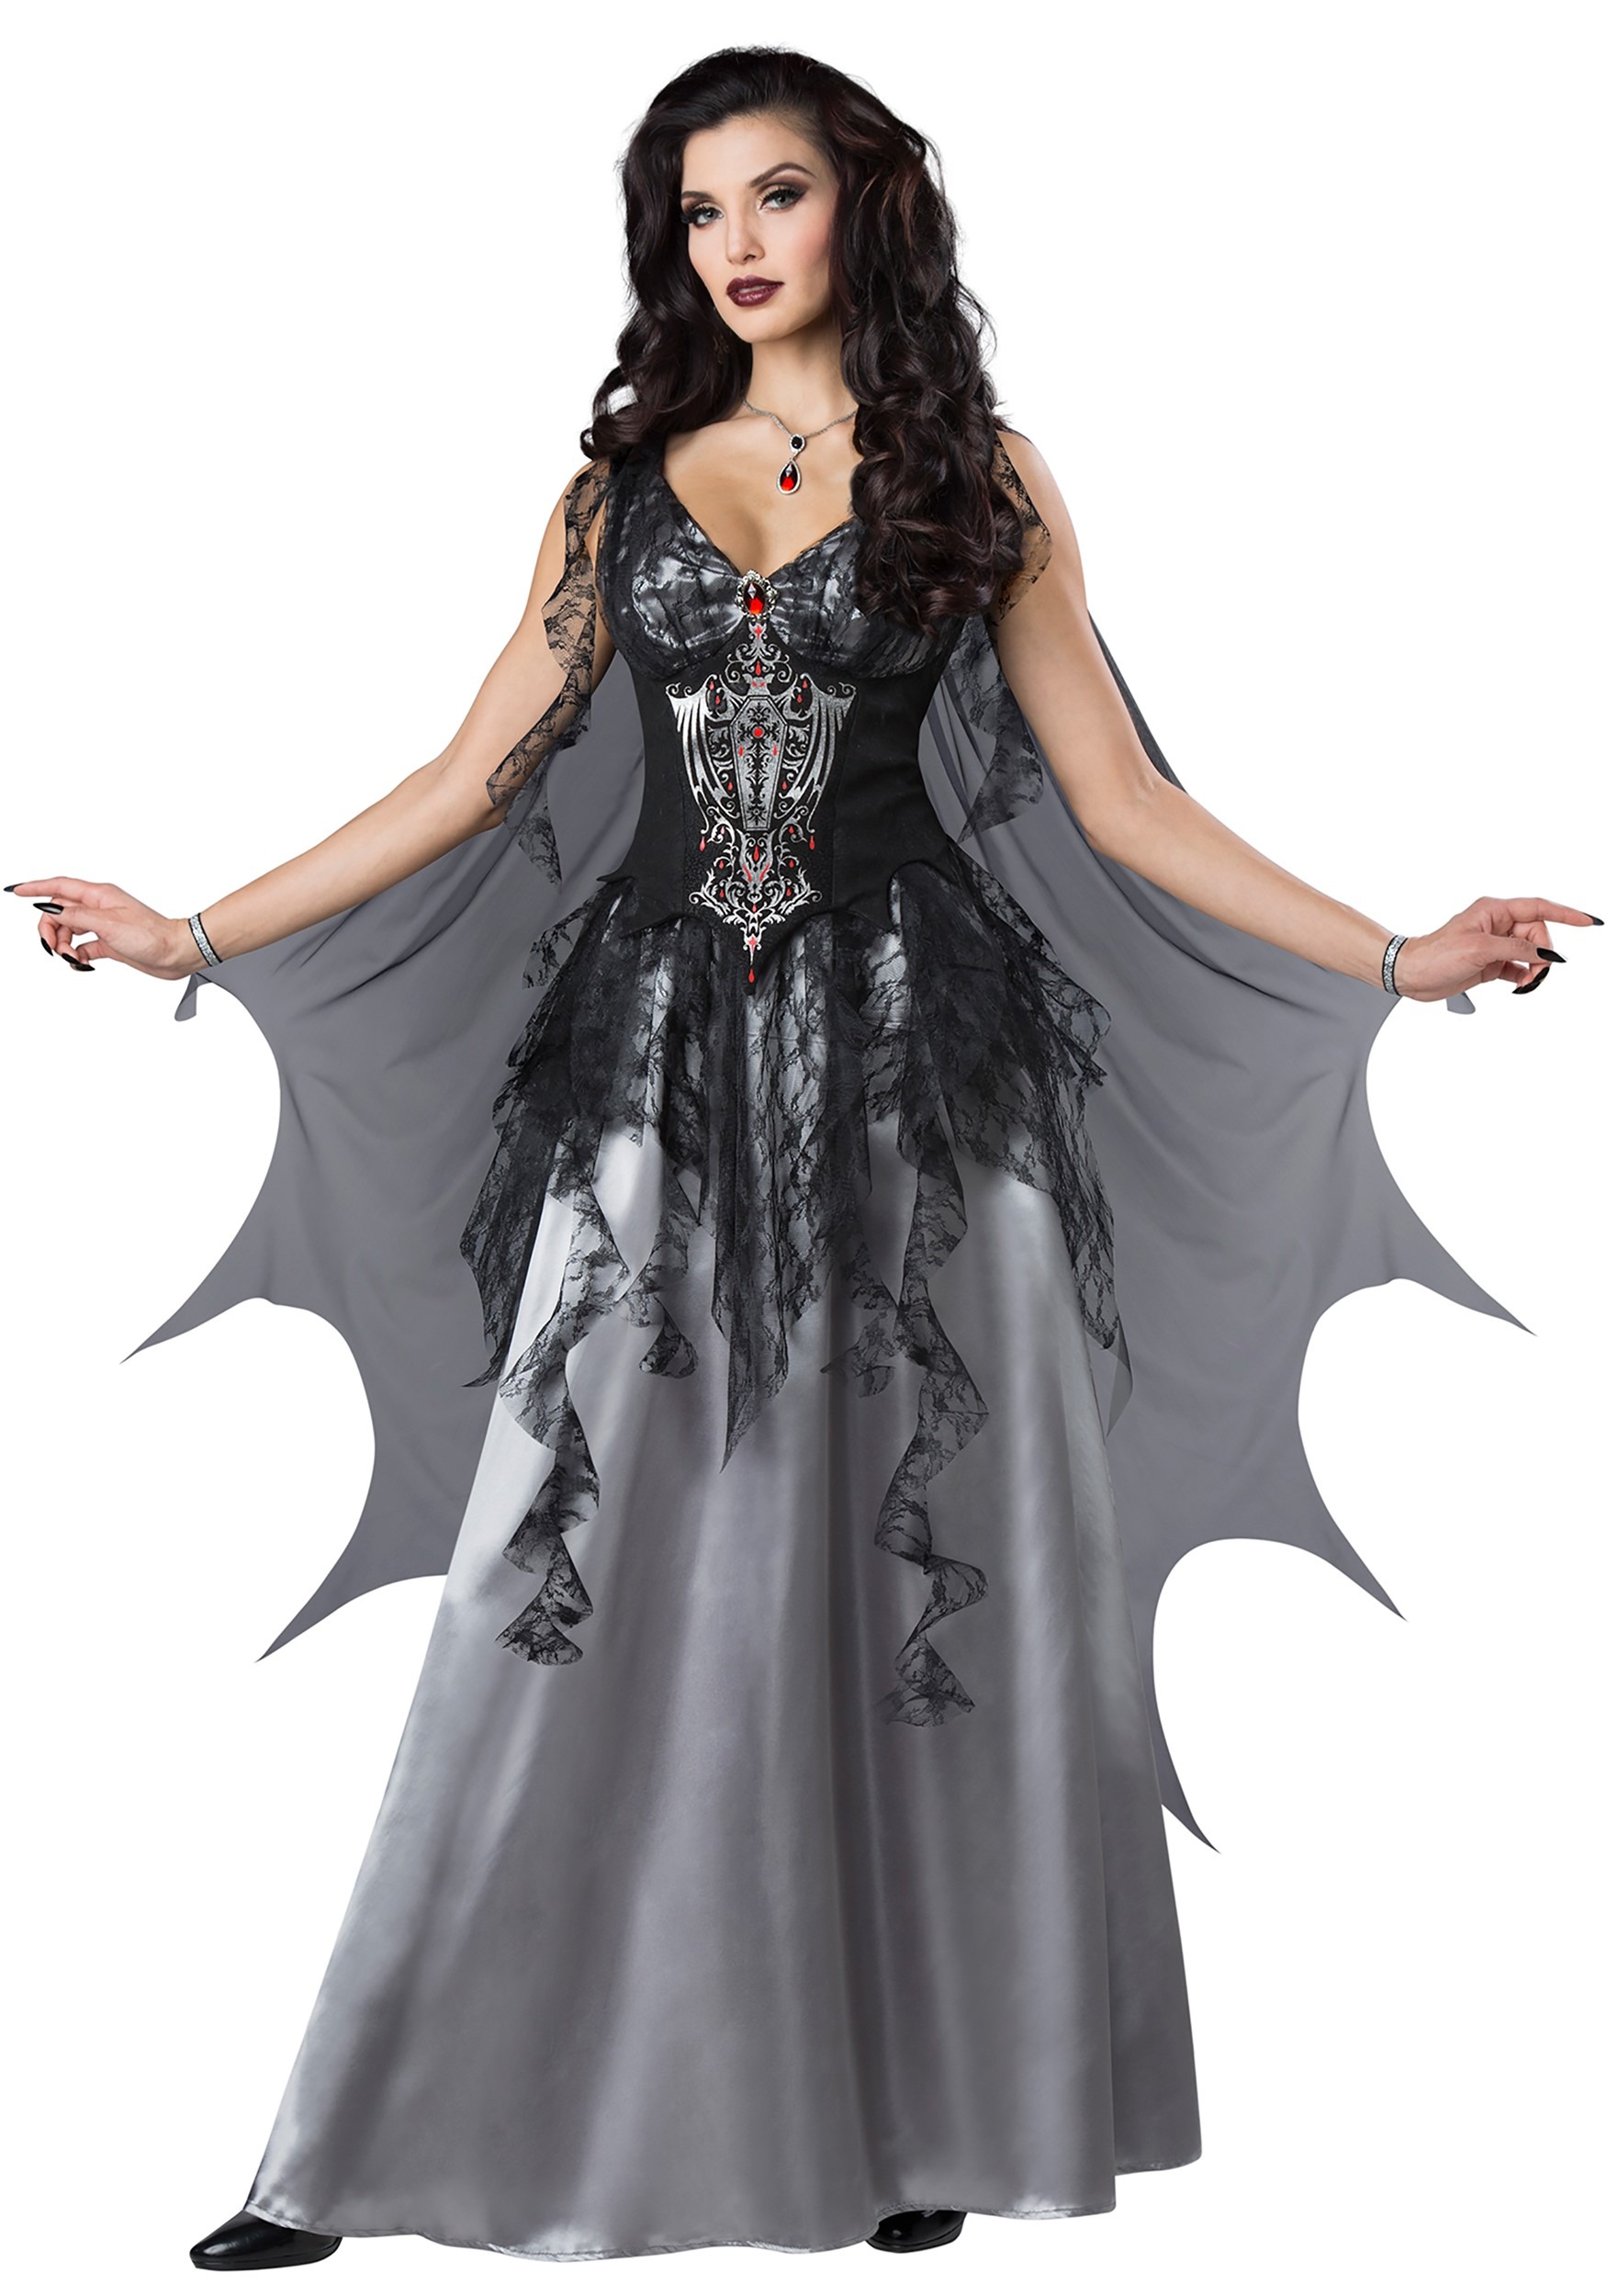 Plus Size Delightfully Dreadful Vampiress Costume for Women